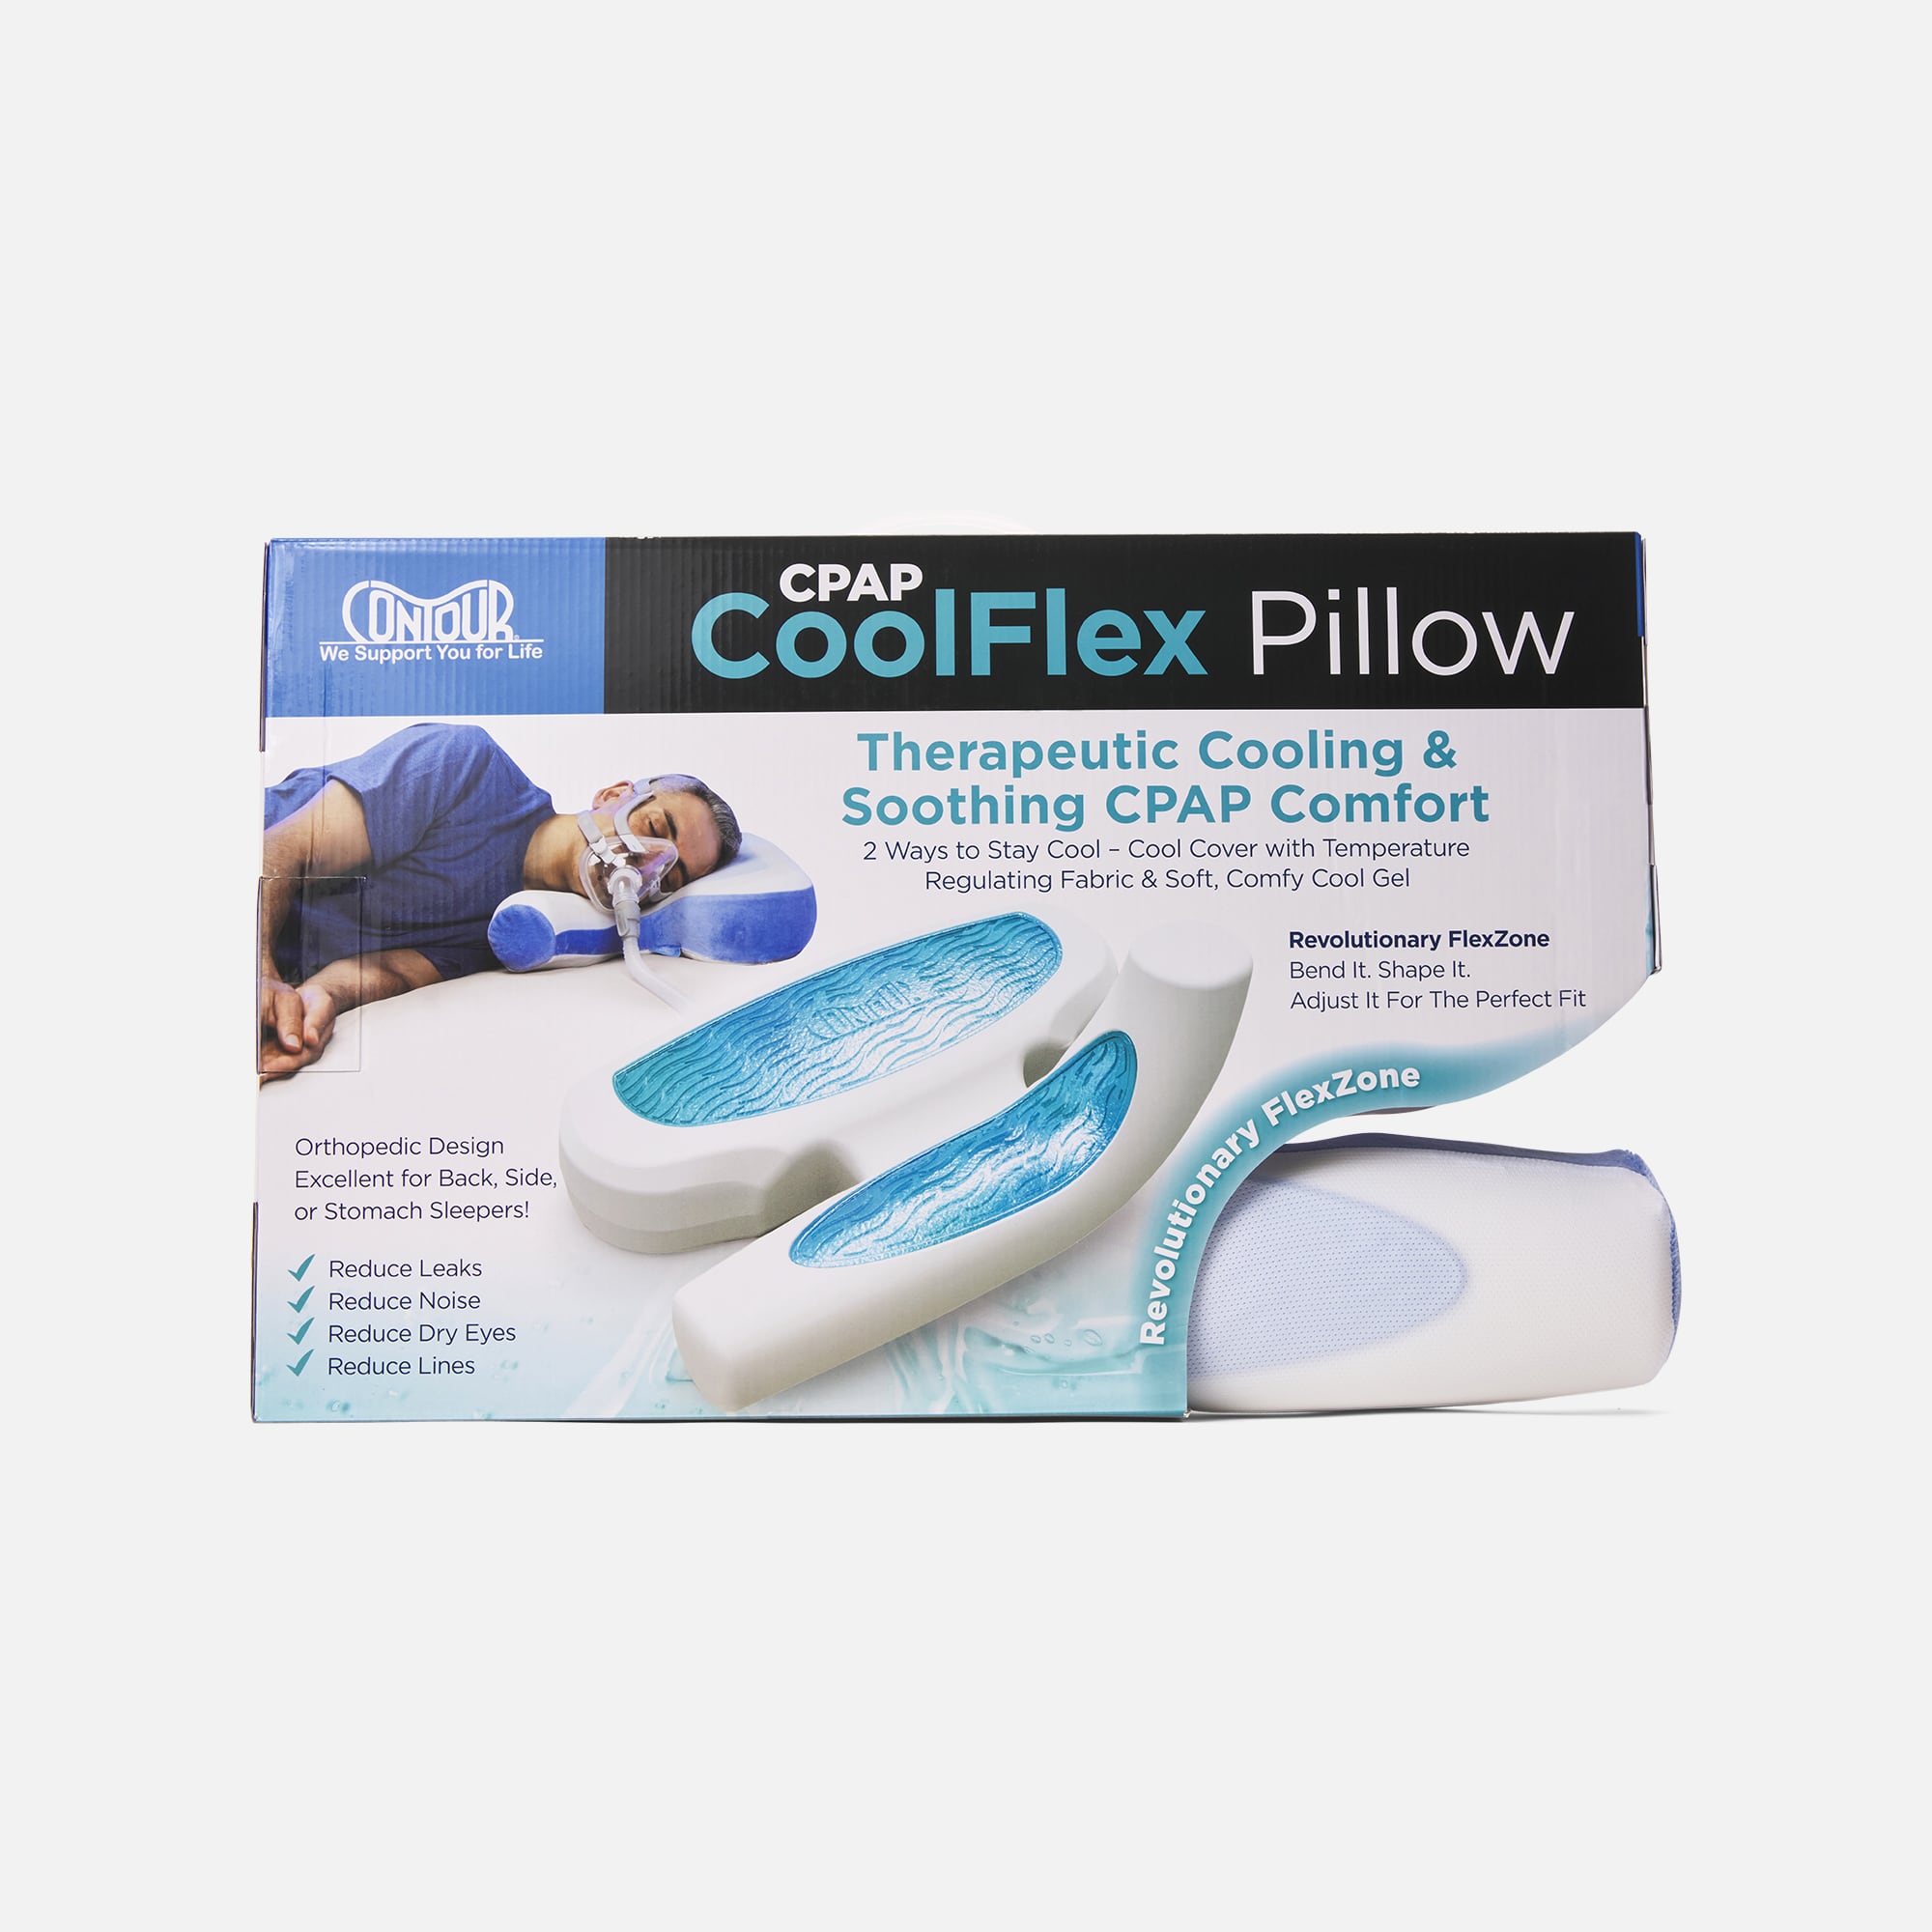 HSA Eligible  Contour CPAP Cool Flex Pillow